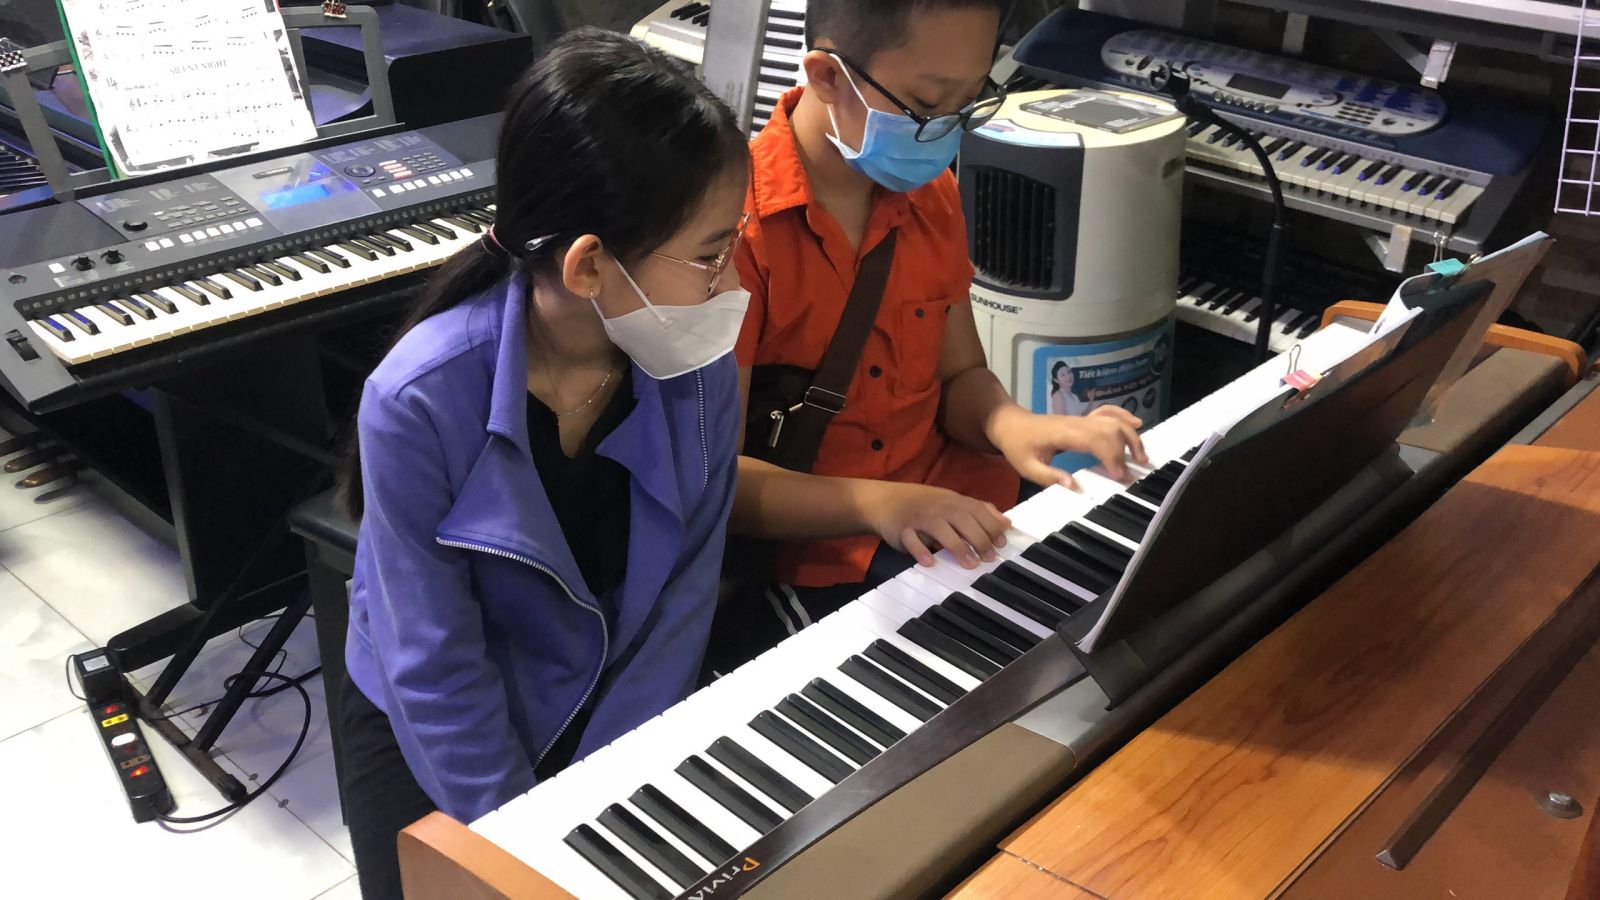 Khóa Học Đàn Piano Thiếu Nhi Tại Quận Tân Phú tpHCM SĐT/Zalo 0989723703